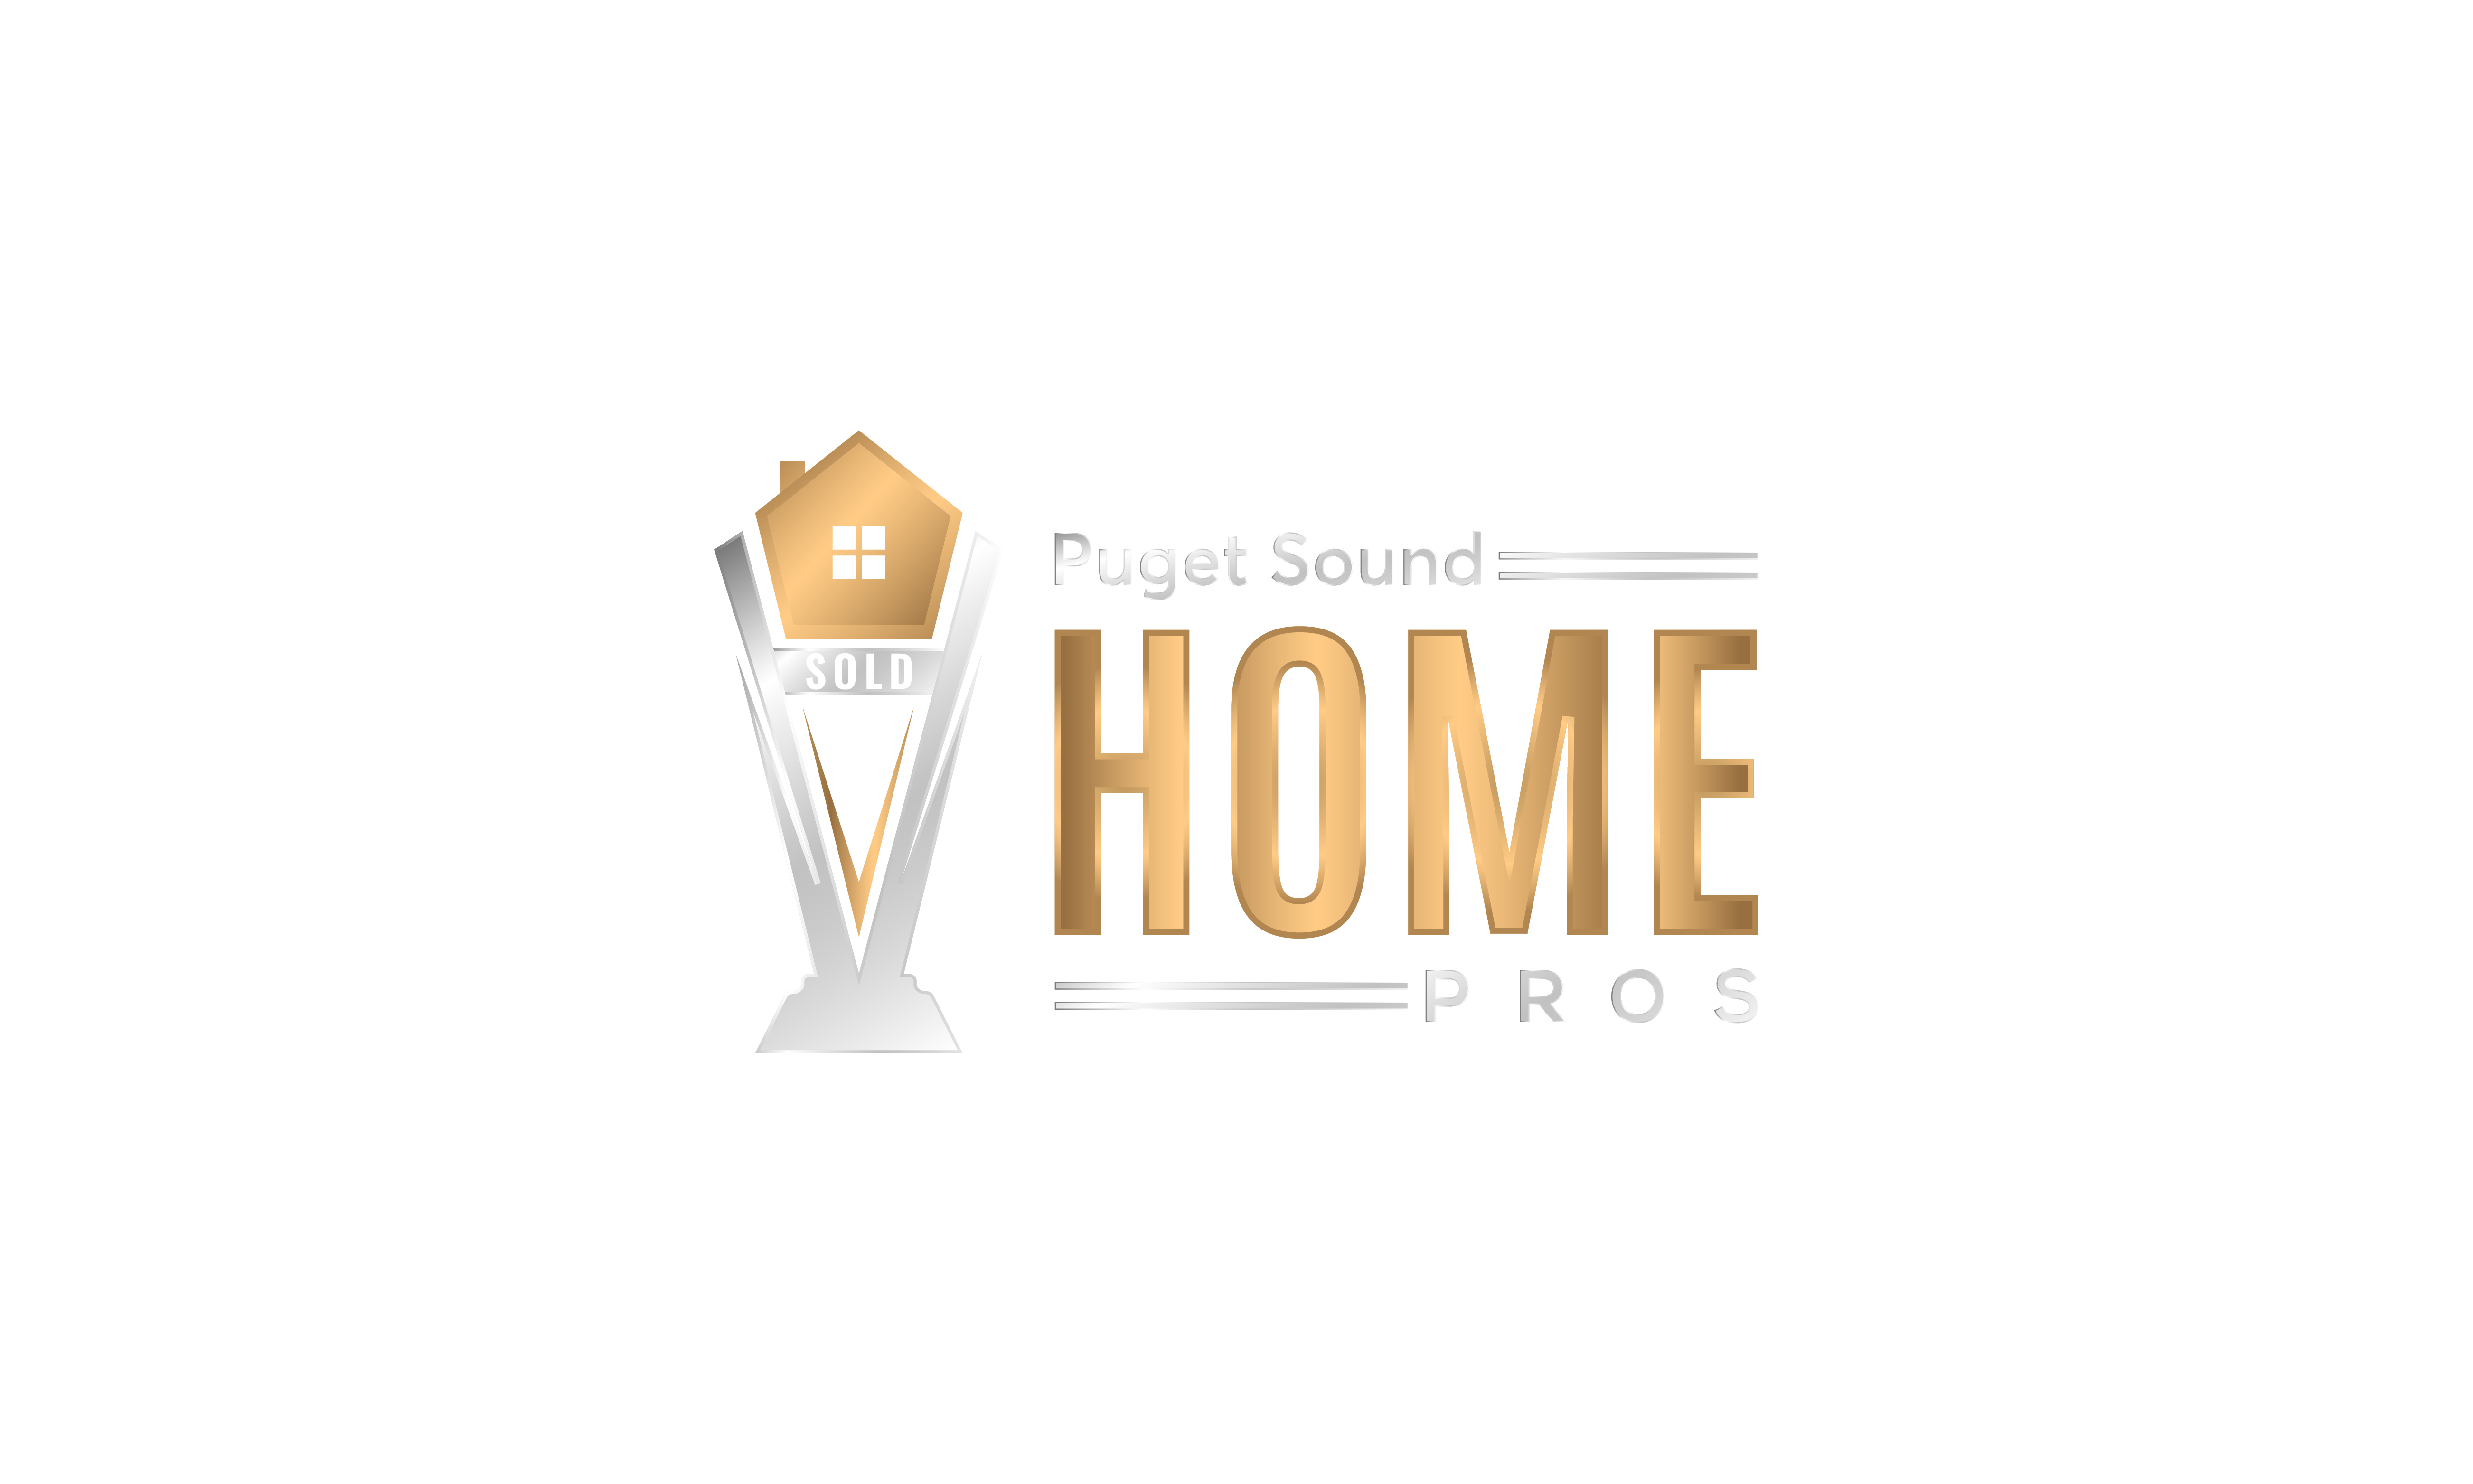 Puget Sound Home Pros